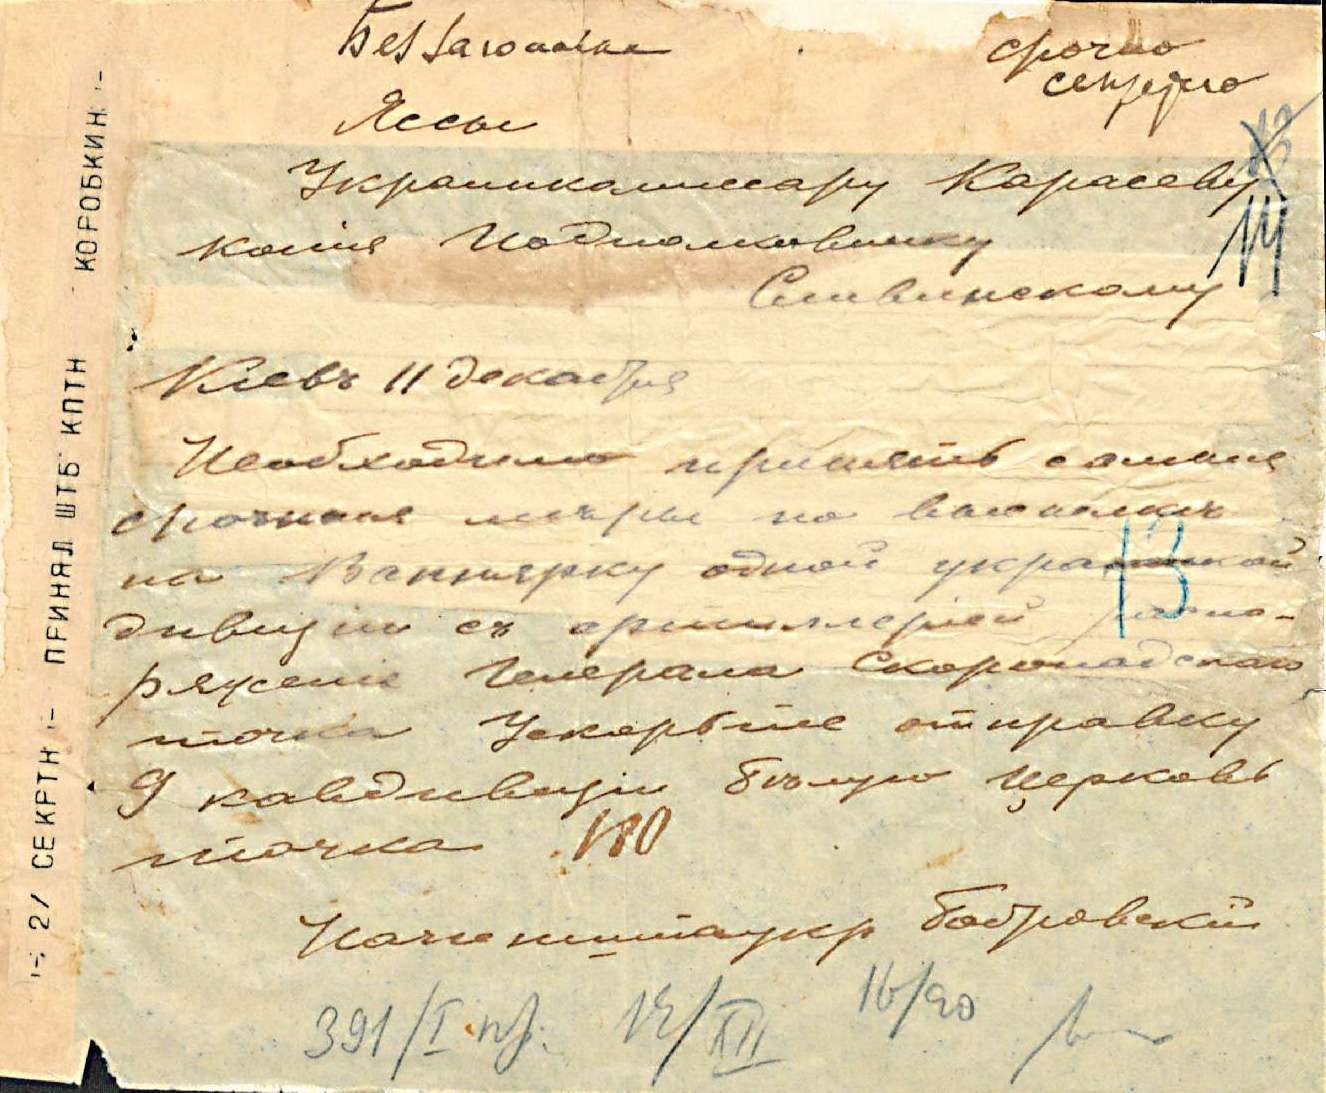 Військова телеграма щодо негайного відправлення у Вапнярку однієї української дивізії з артилерією в розпорядження генерала П. Скоропадського. 11 грудня 1918 р.